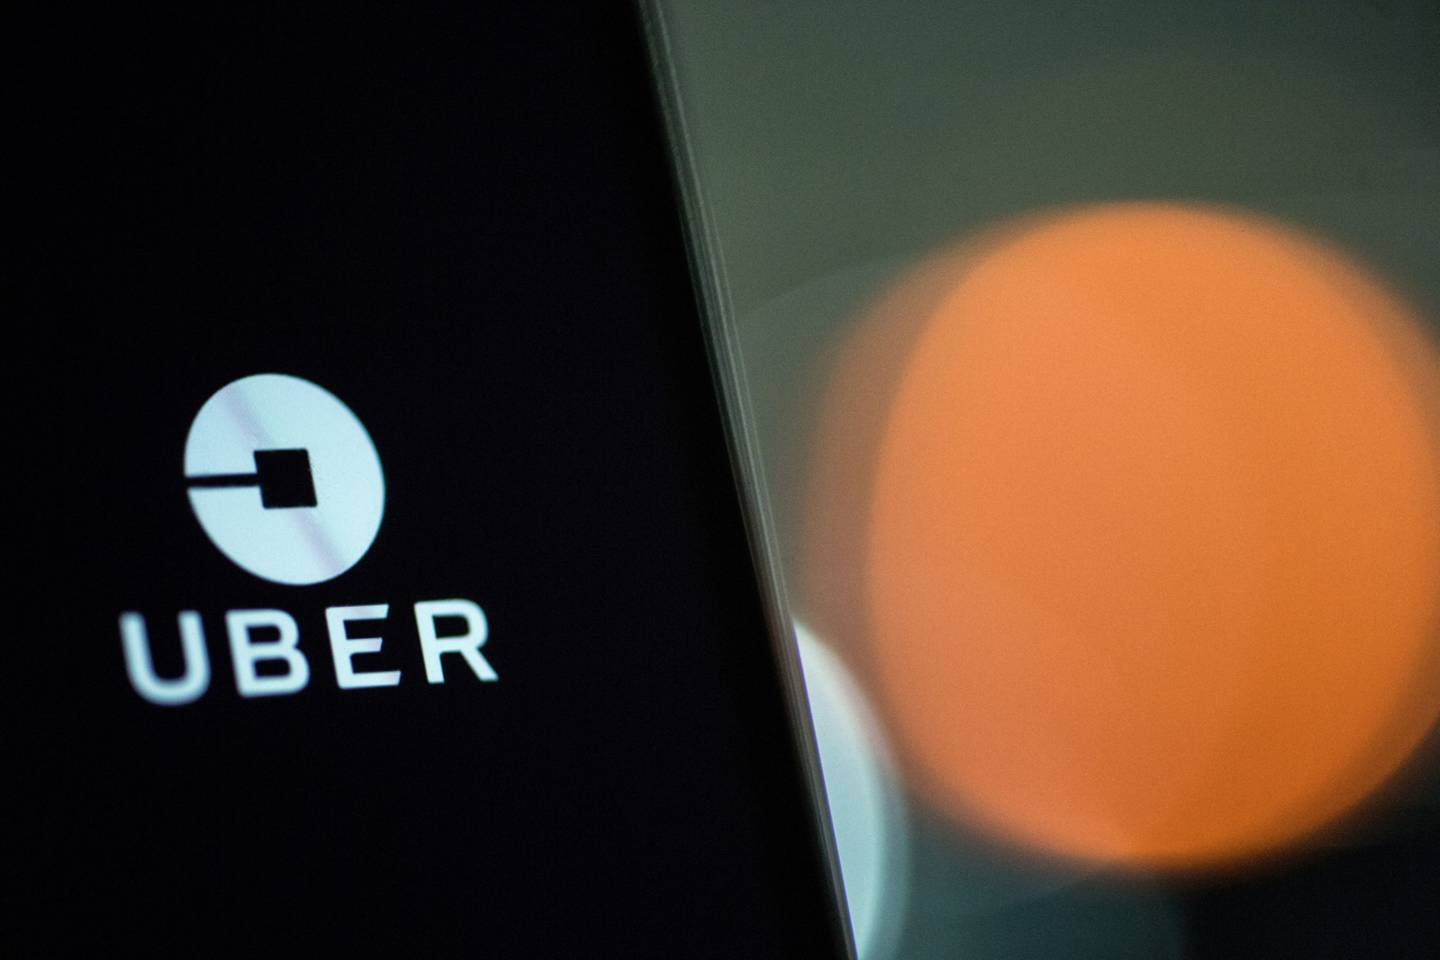 Un logotipo de Uber Technologies Inc. aparece en la pantalla de un smartphone en esta fotografía arreglada en Londres, Reino Unido, el viernes 22 de diciembre de 2017. Fotógrafo: Chris J. Ratcliffe/Bloomberg